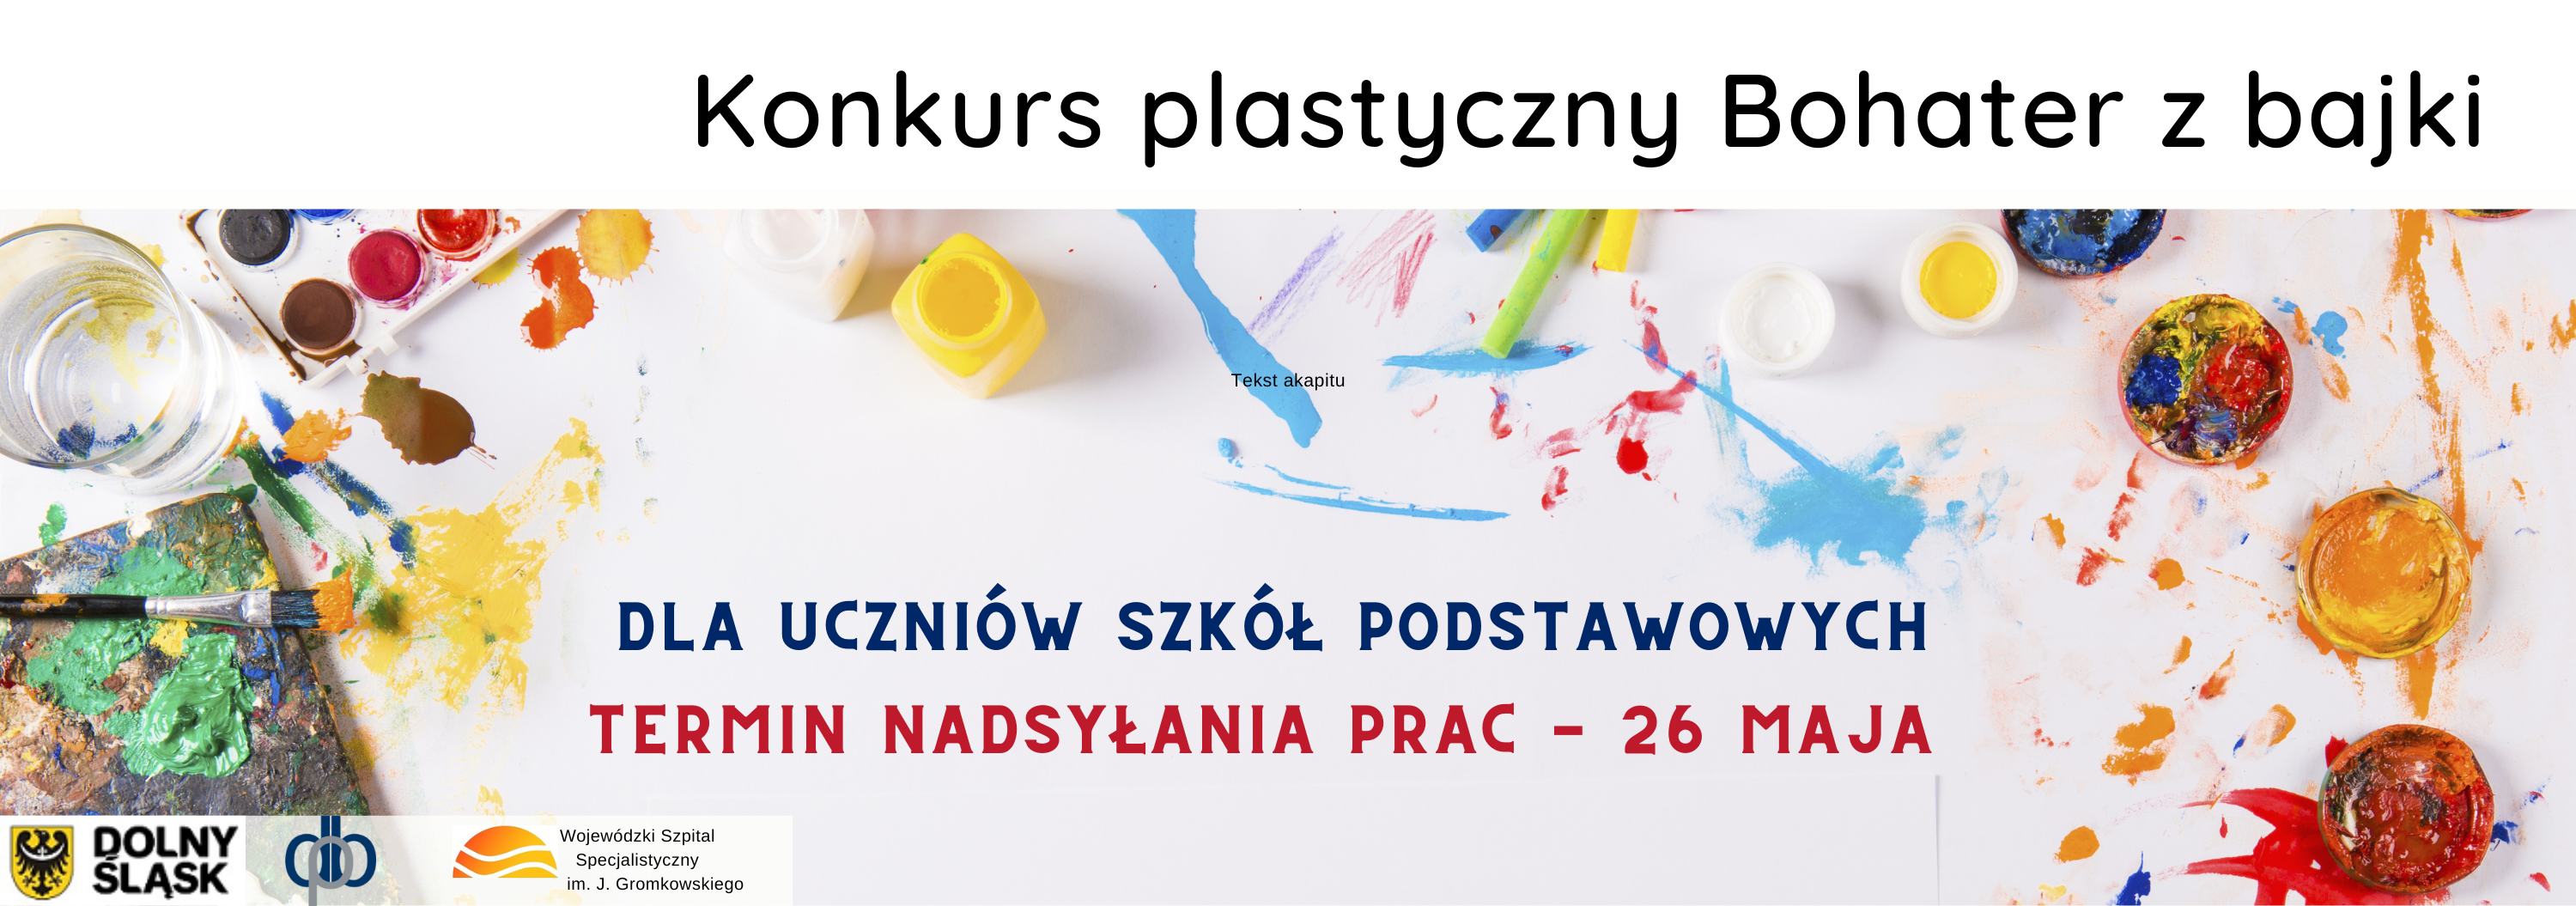 Konkurs Śladami polskich ptaków wędrownych